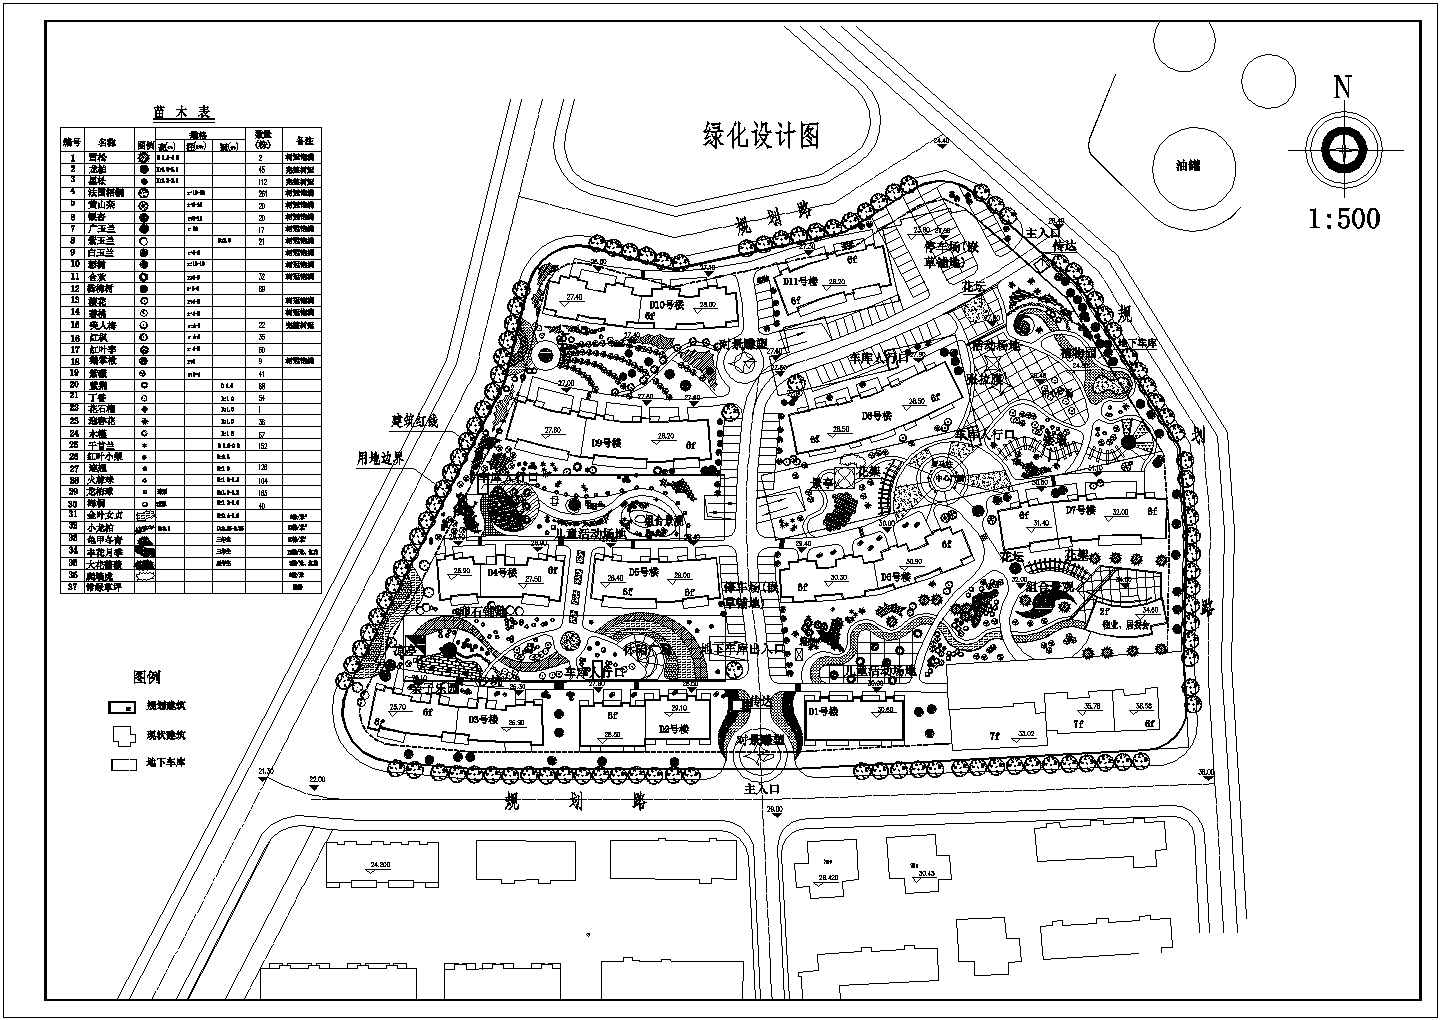 【苏州】某高档小区景观全套规划设计cad图(含绿化设计图)